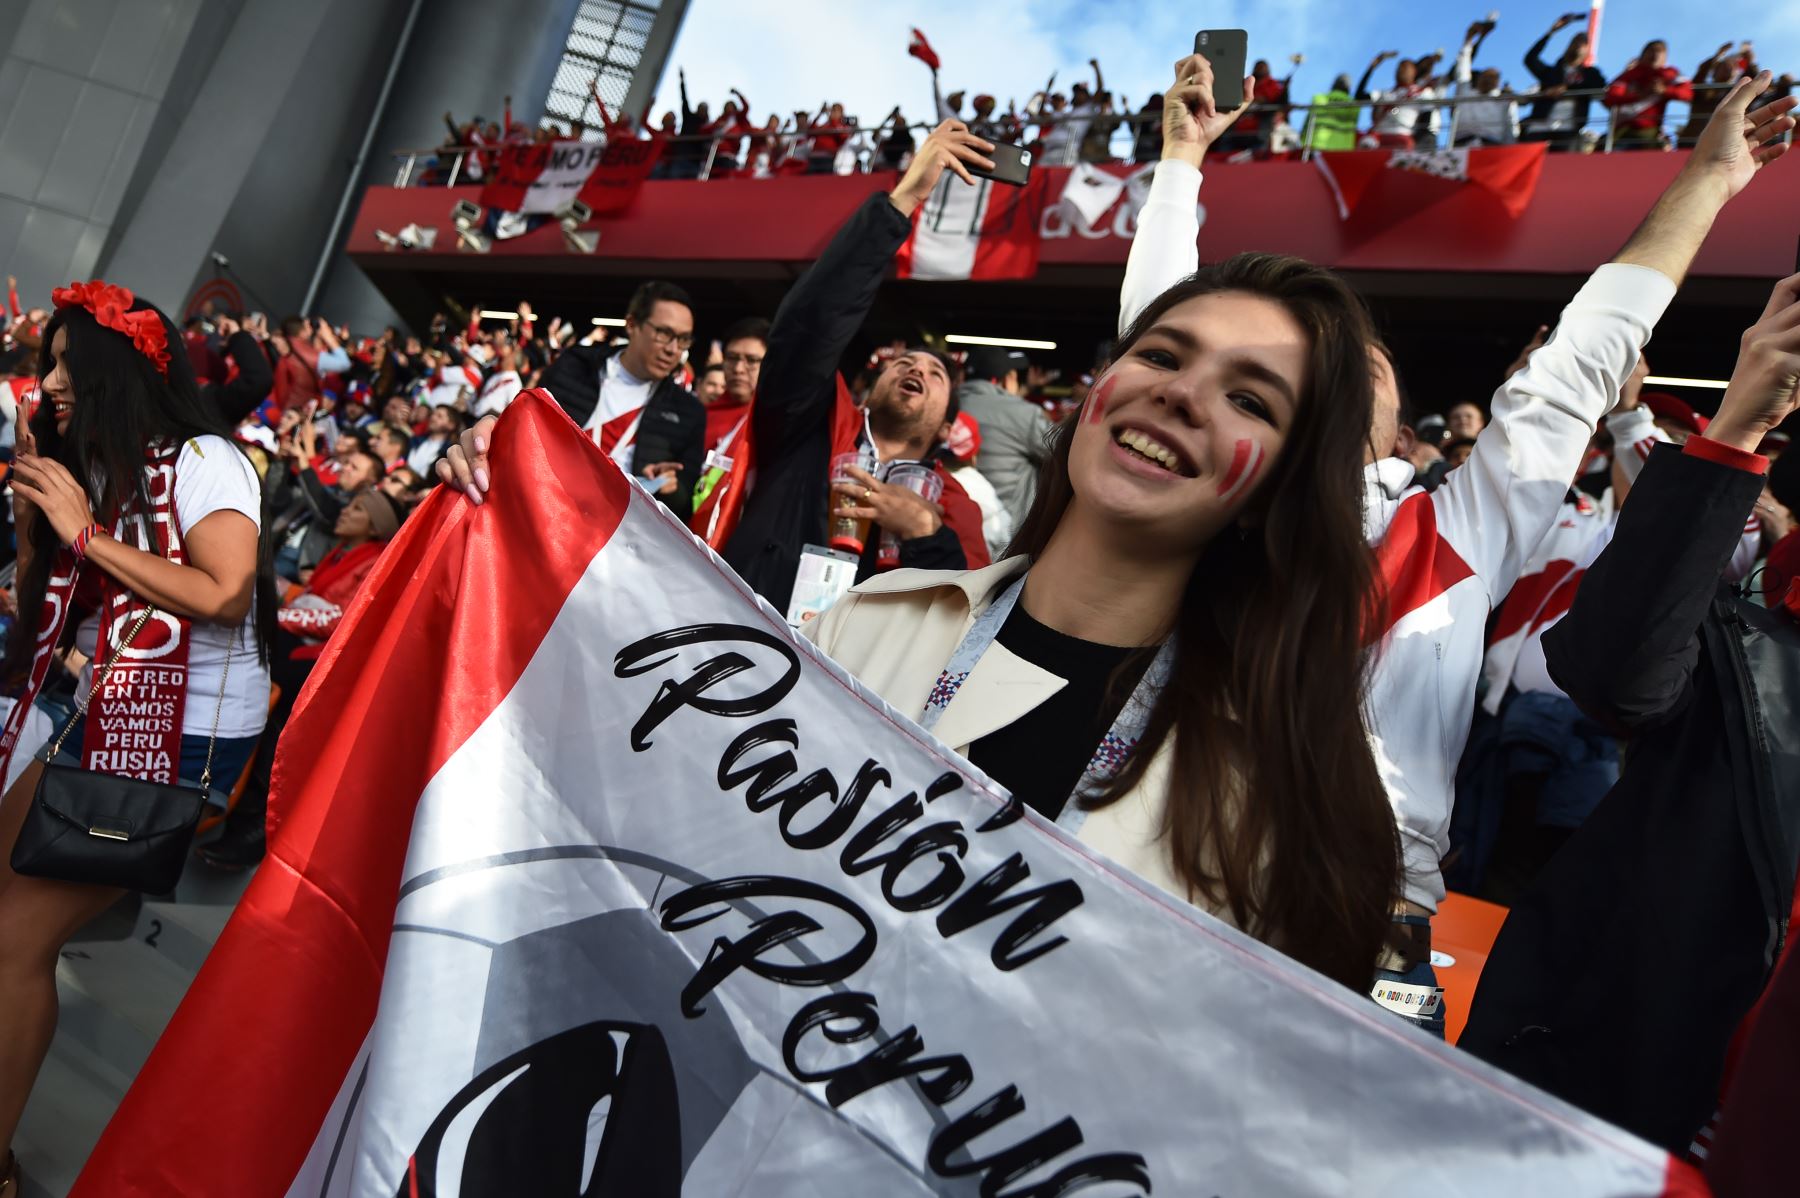 Los fanáticos de Perú aplauden antes del partido de fútbol del Grupo C de la Copa Mundial Rusia 2018 entre Francia y Perú en el Ekaterimburgo Arena . / AFP